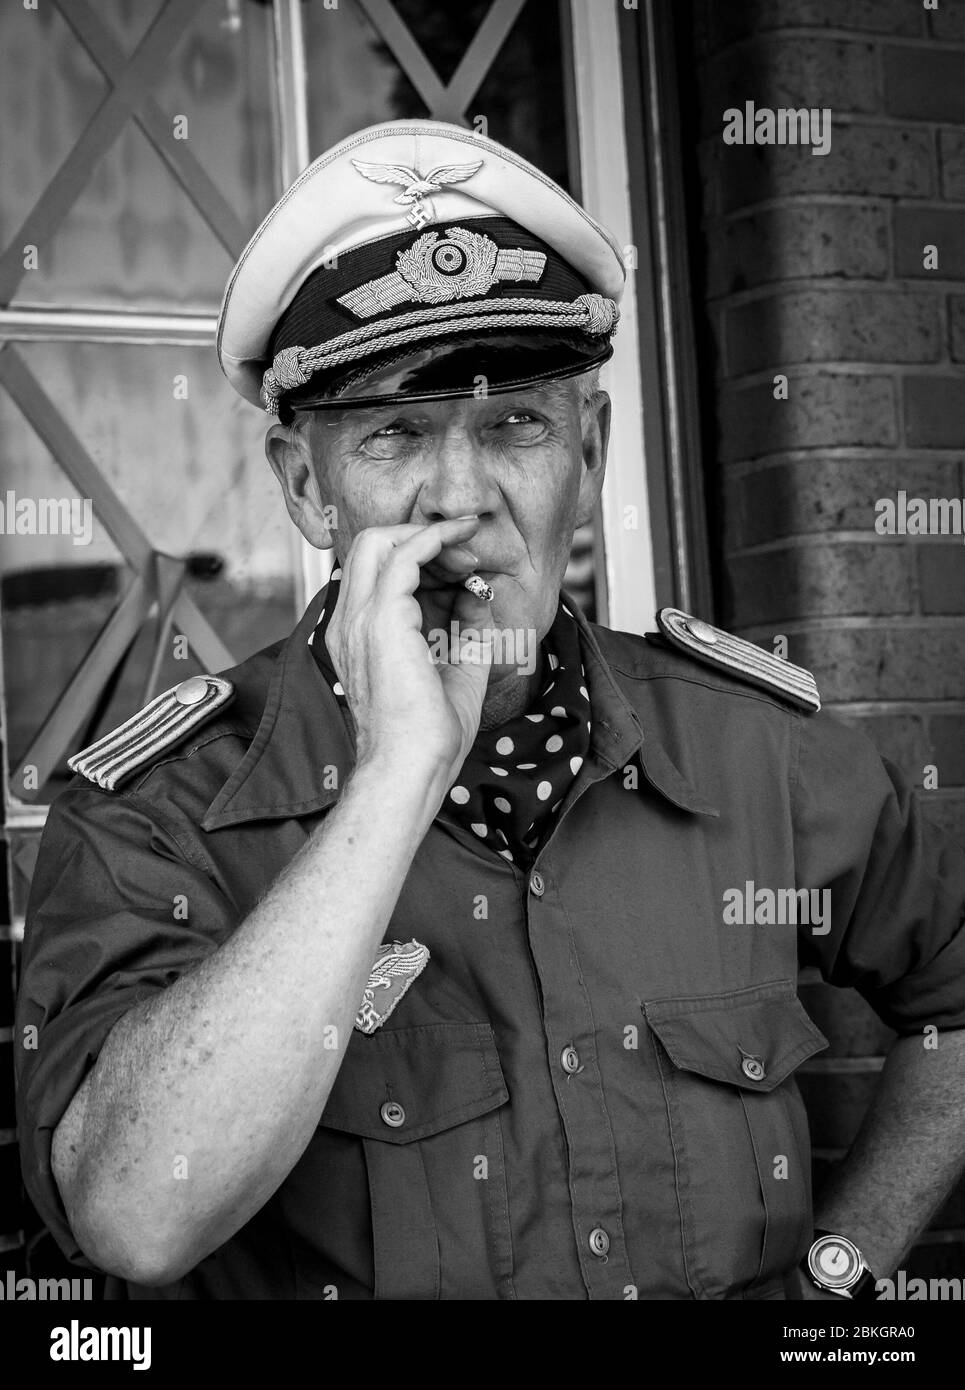 Monochromes Nahaufnahme-Porträt vorne, 1940s Mann in Militärkostüm isoliert im Freien als Luftwaffenoffizier Zigarette raucht WW2 Kriegszeit Sommer Ereignis Großbritannien Stockfoto